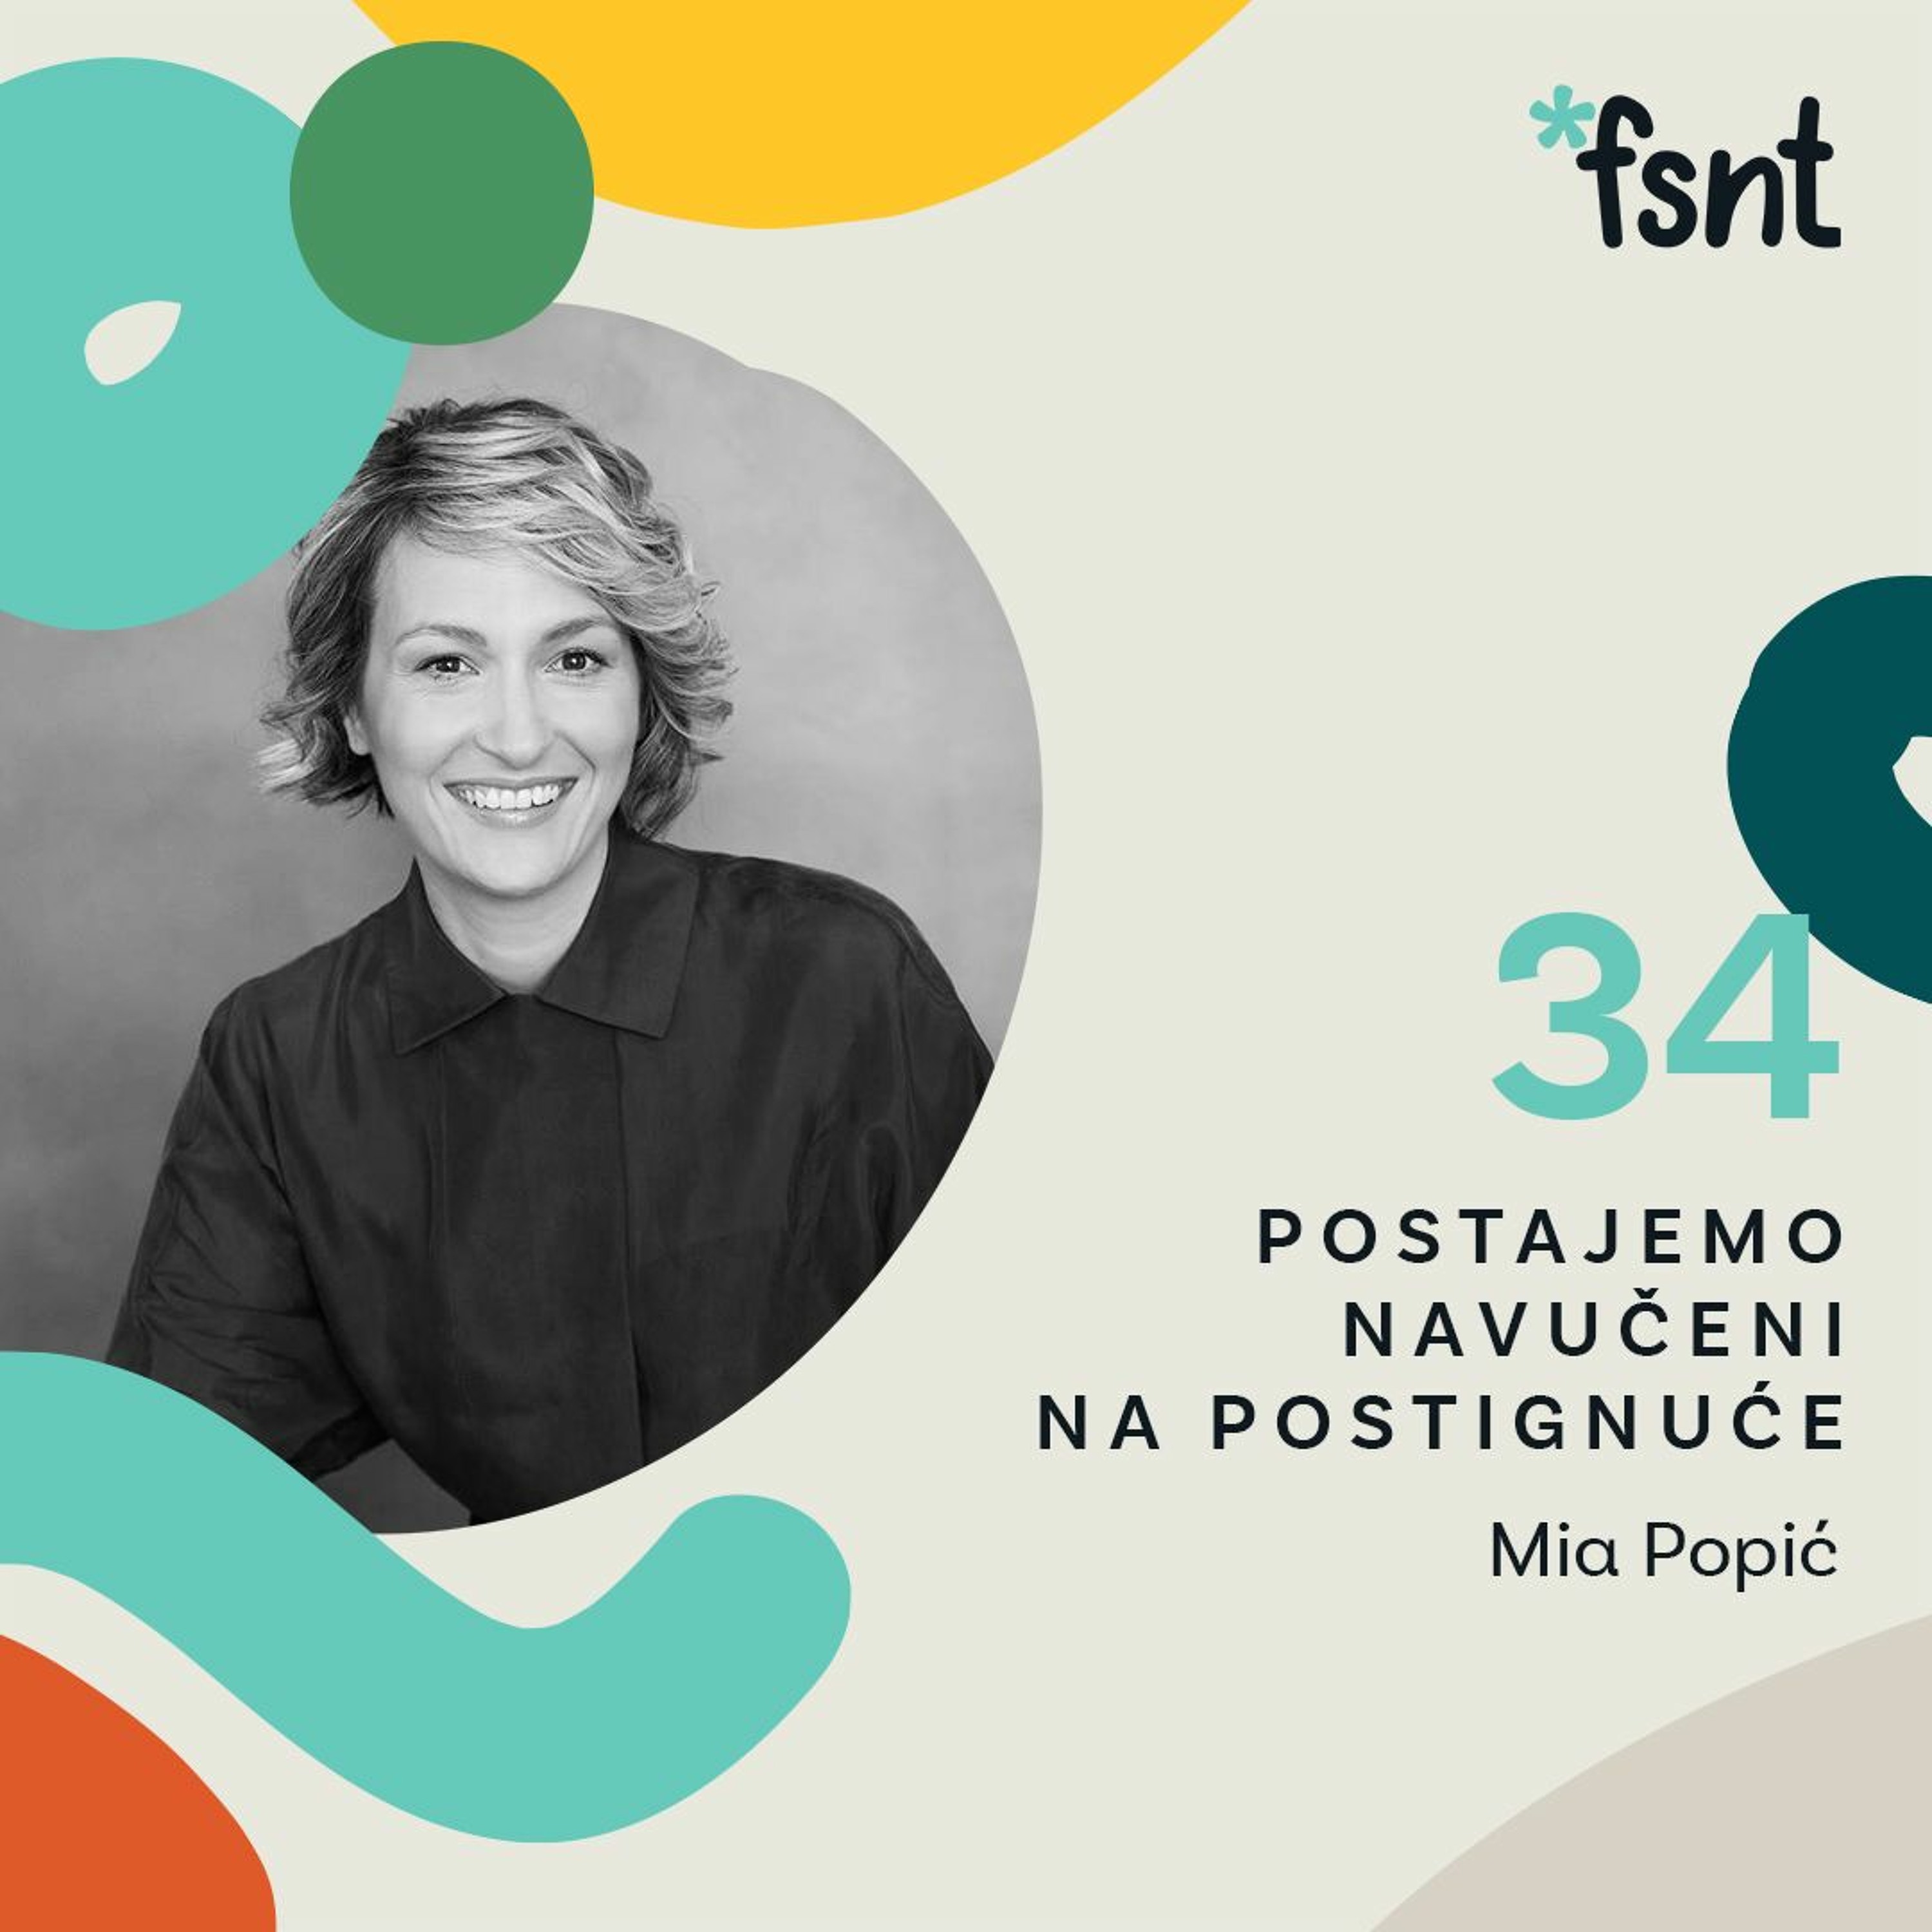 Mia Popić - biznis psihološkinja, psihoterapeutkinja i preduzetnica | Fusnota podkast 34